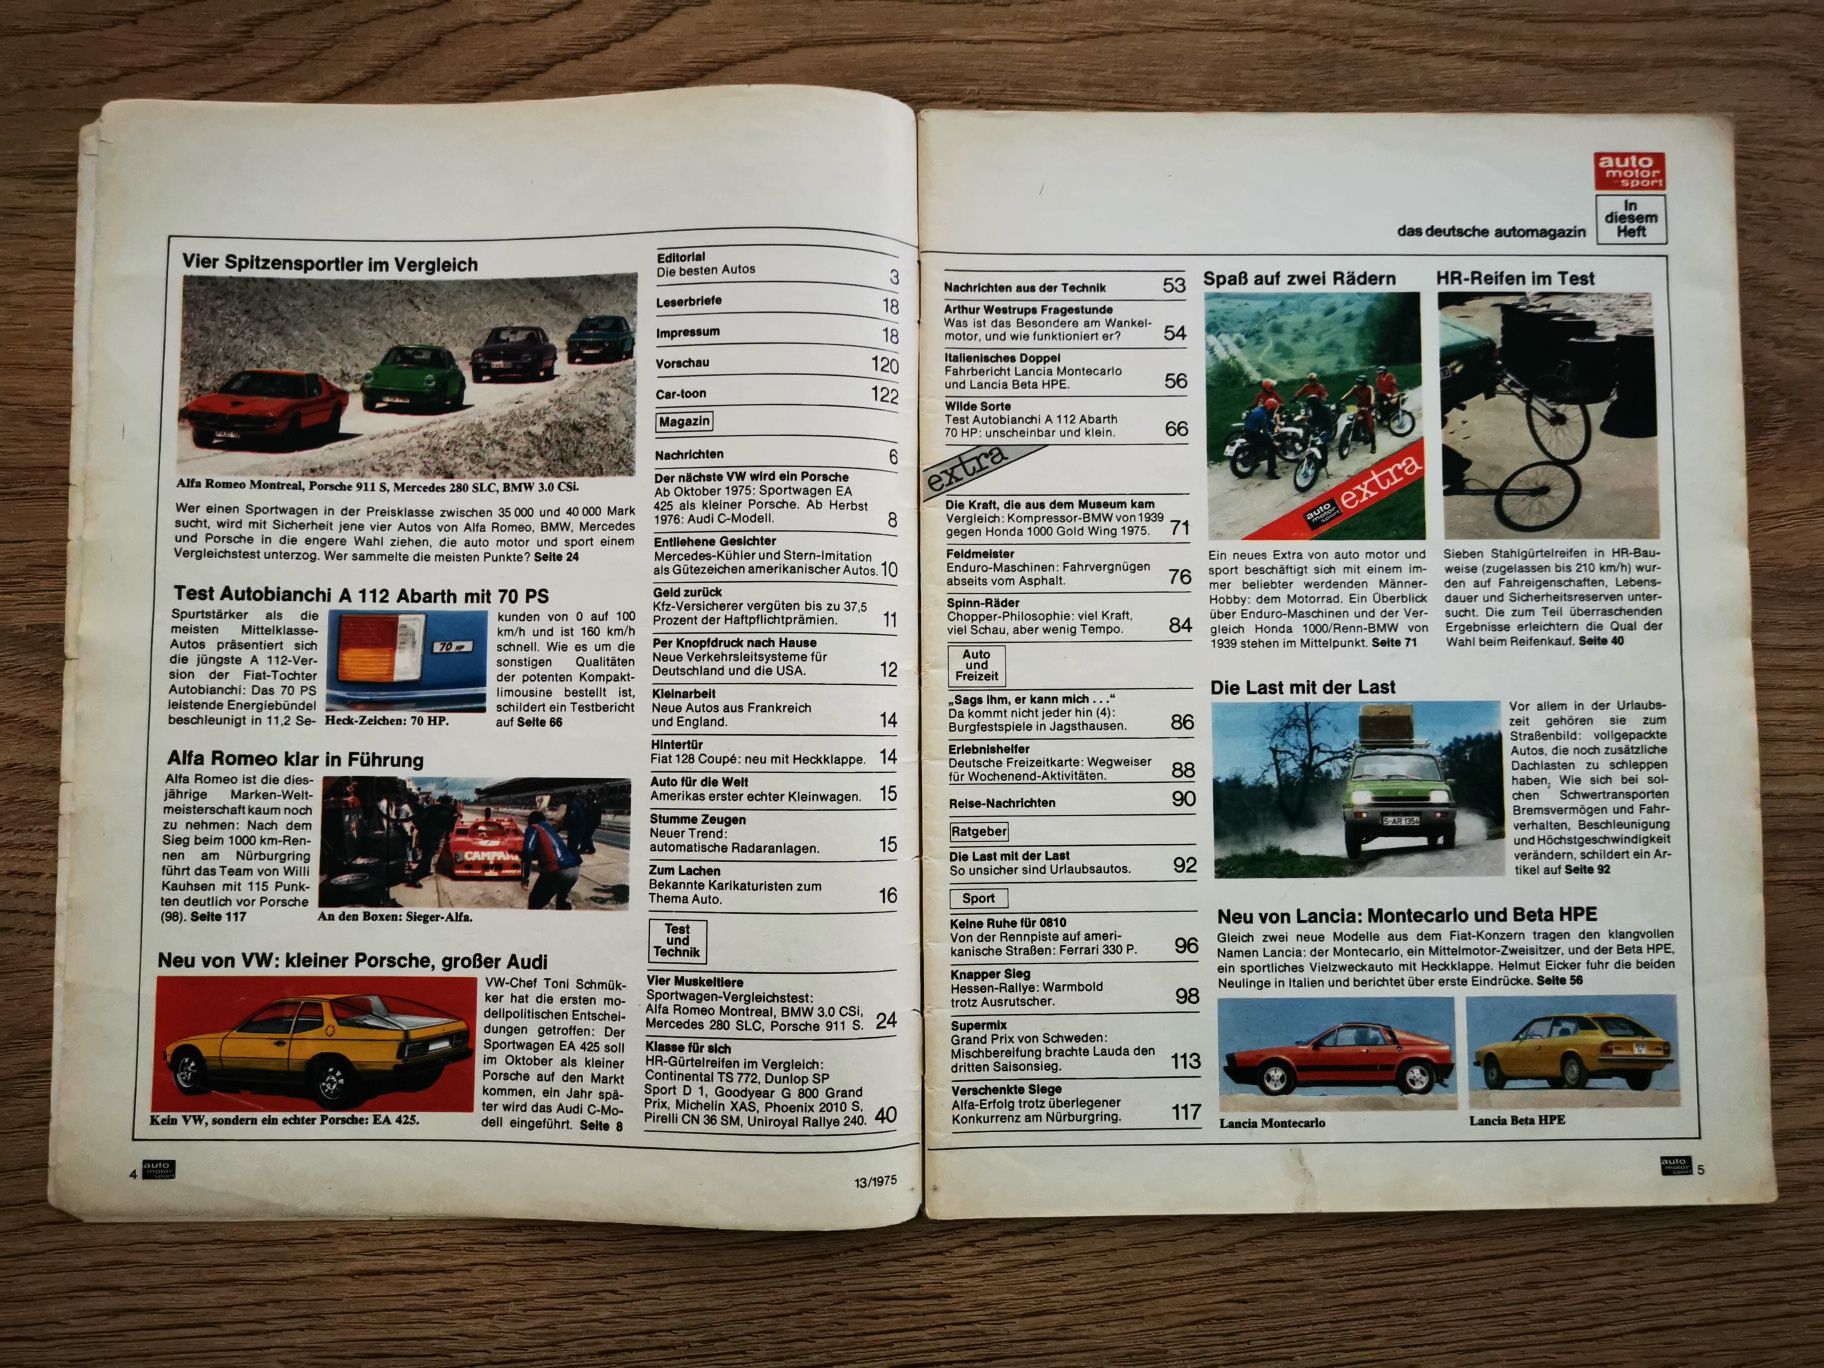 Czasopismo Auto Motor und Sport z czerwca 1975 roku (j. niemiecki)